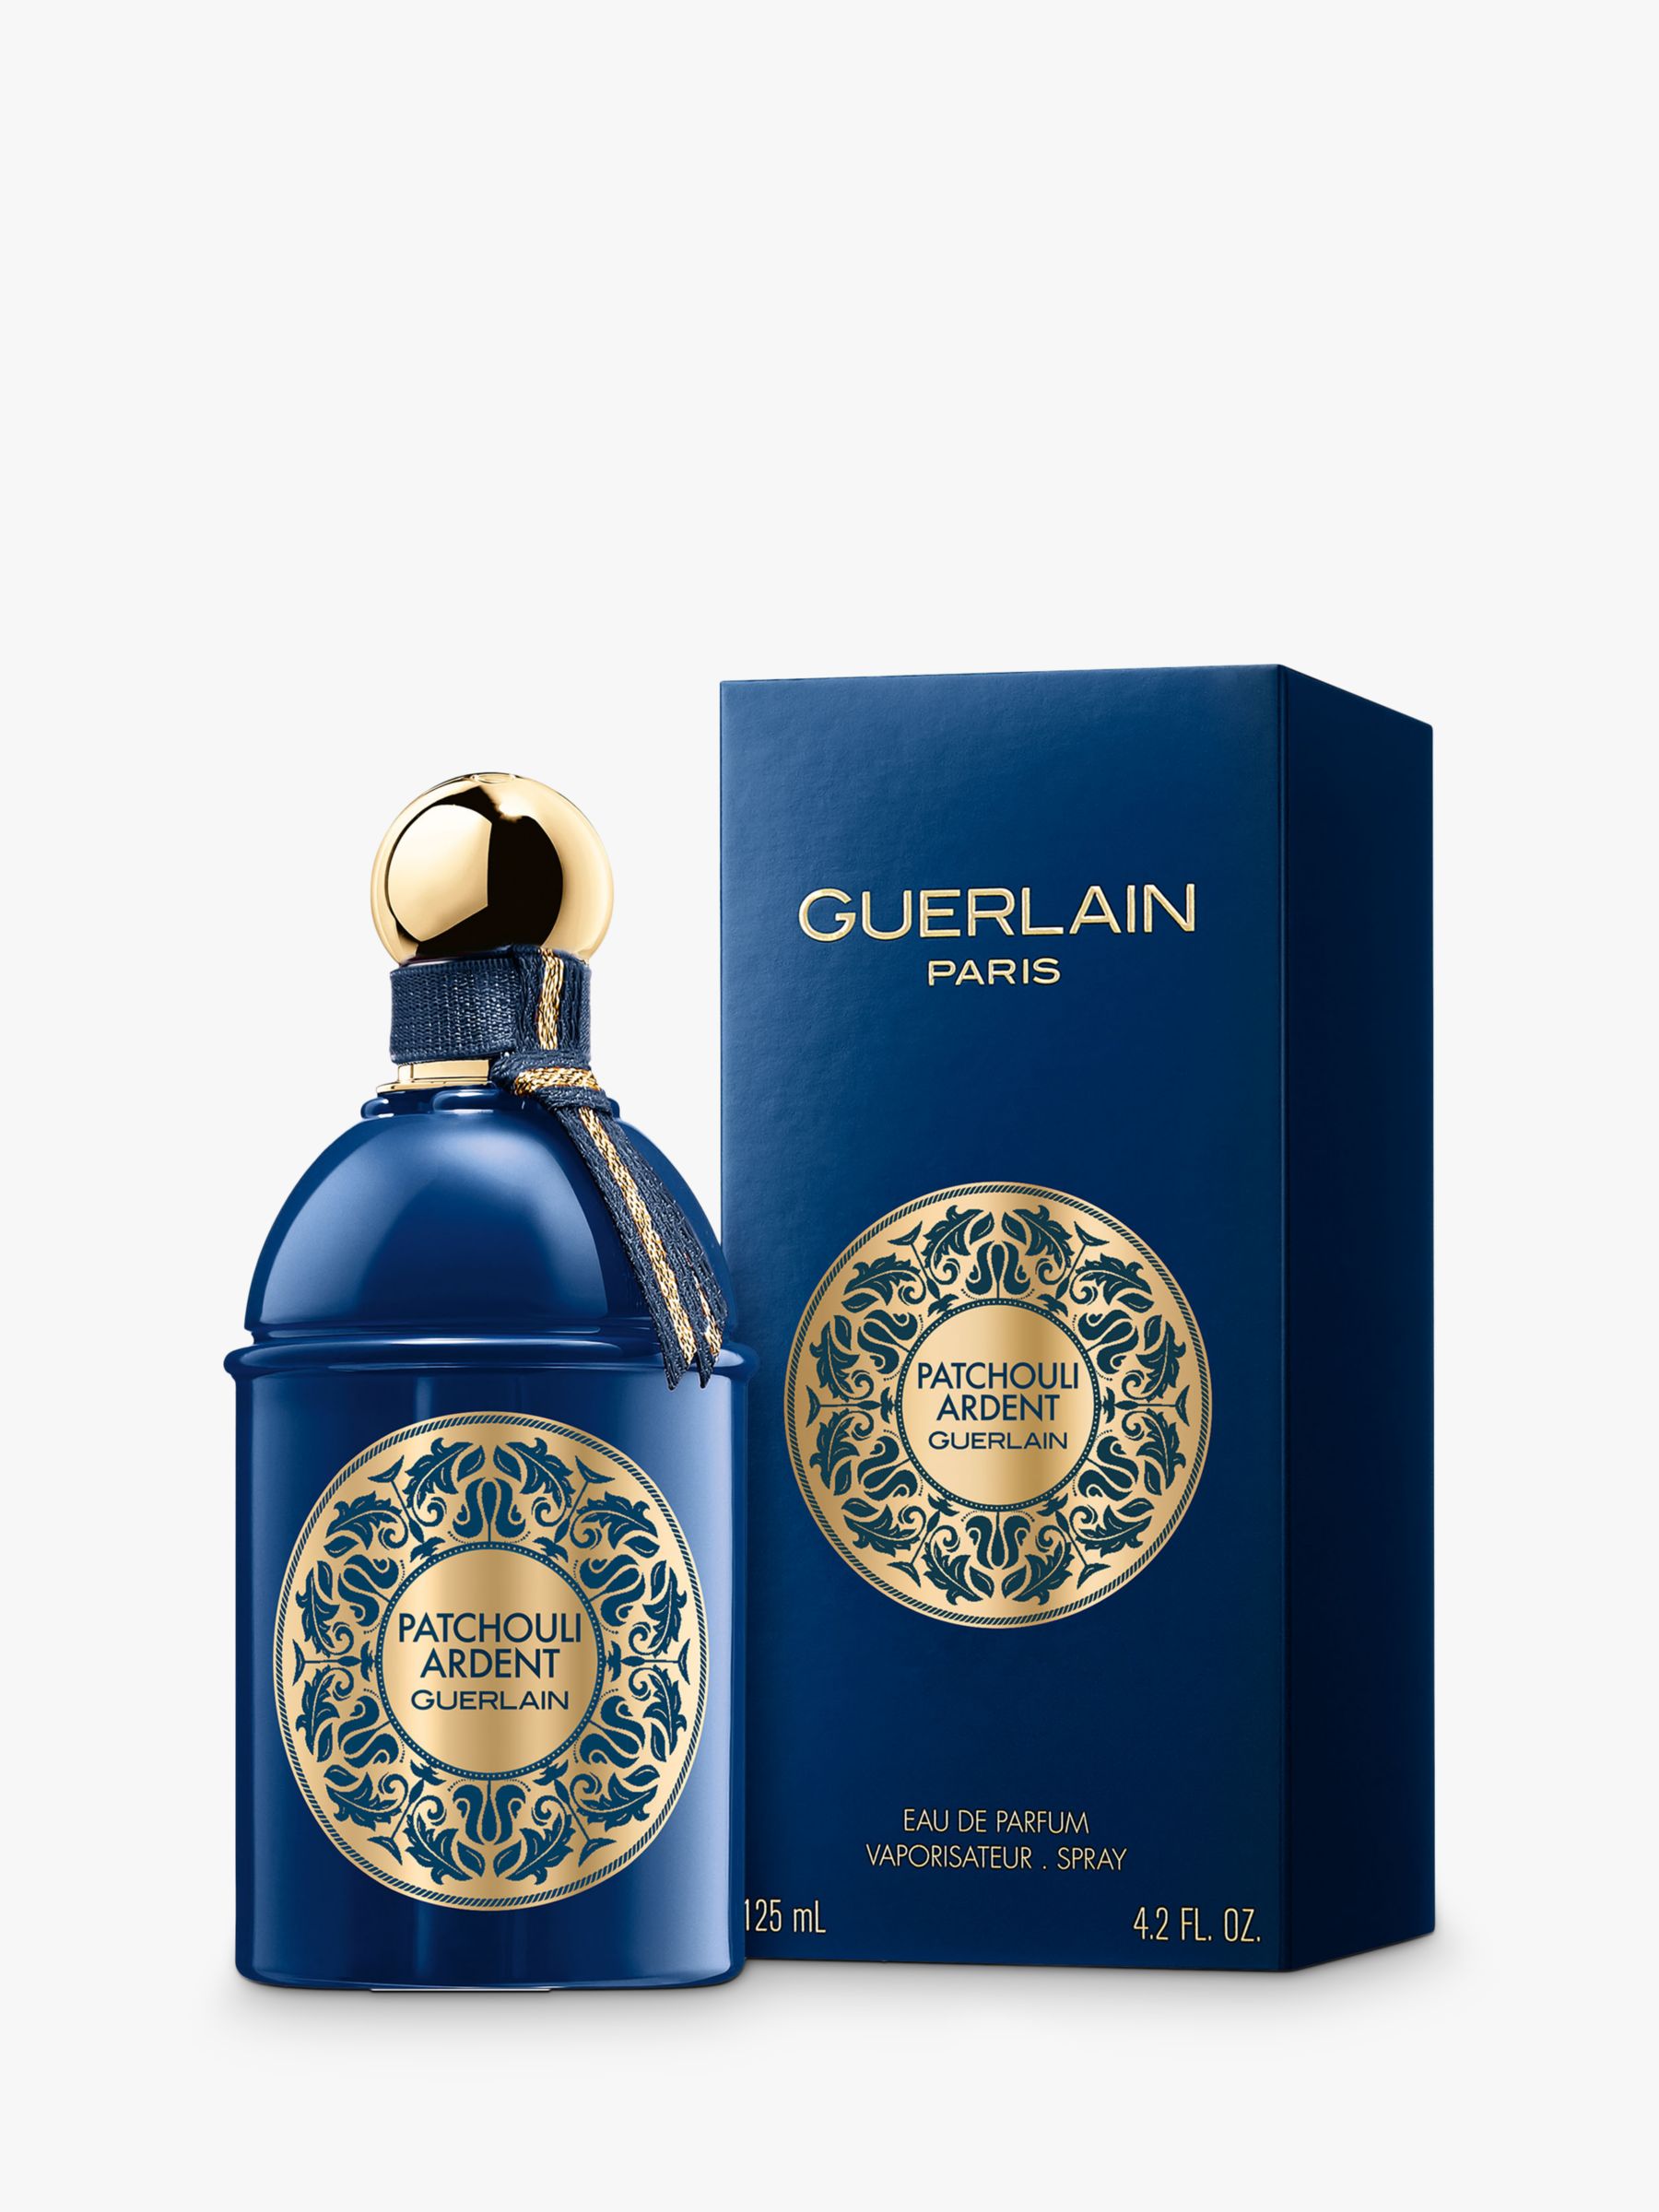 Guerlain Patchouli Ardent Eau de Parfum, 125ml